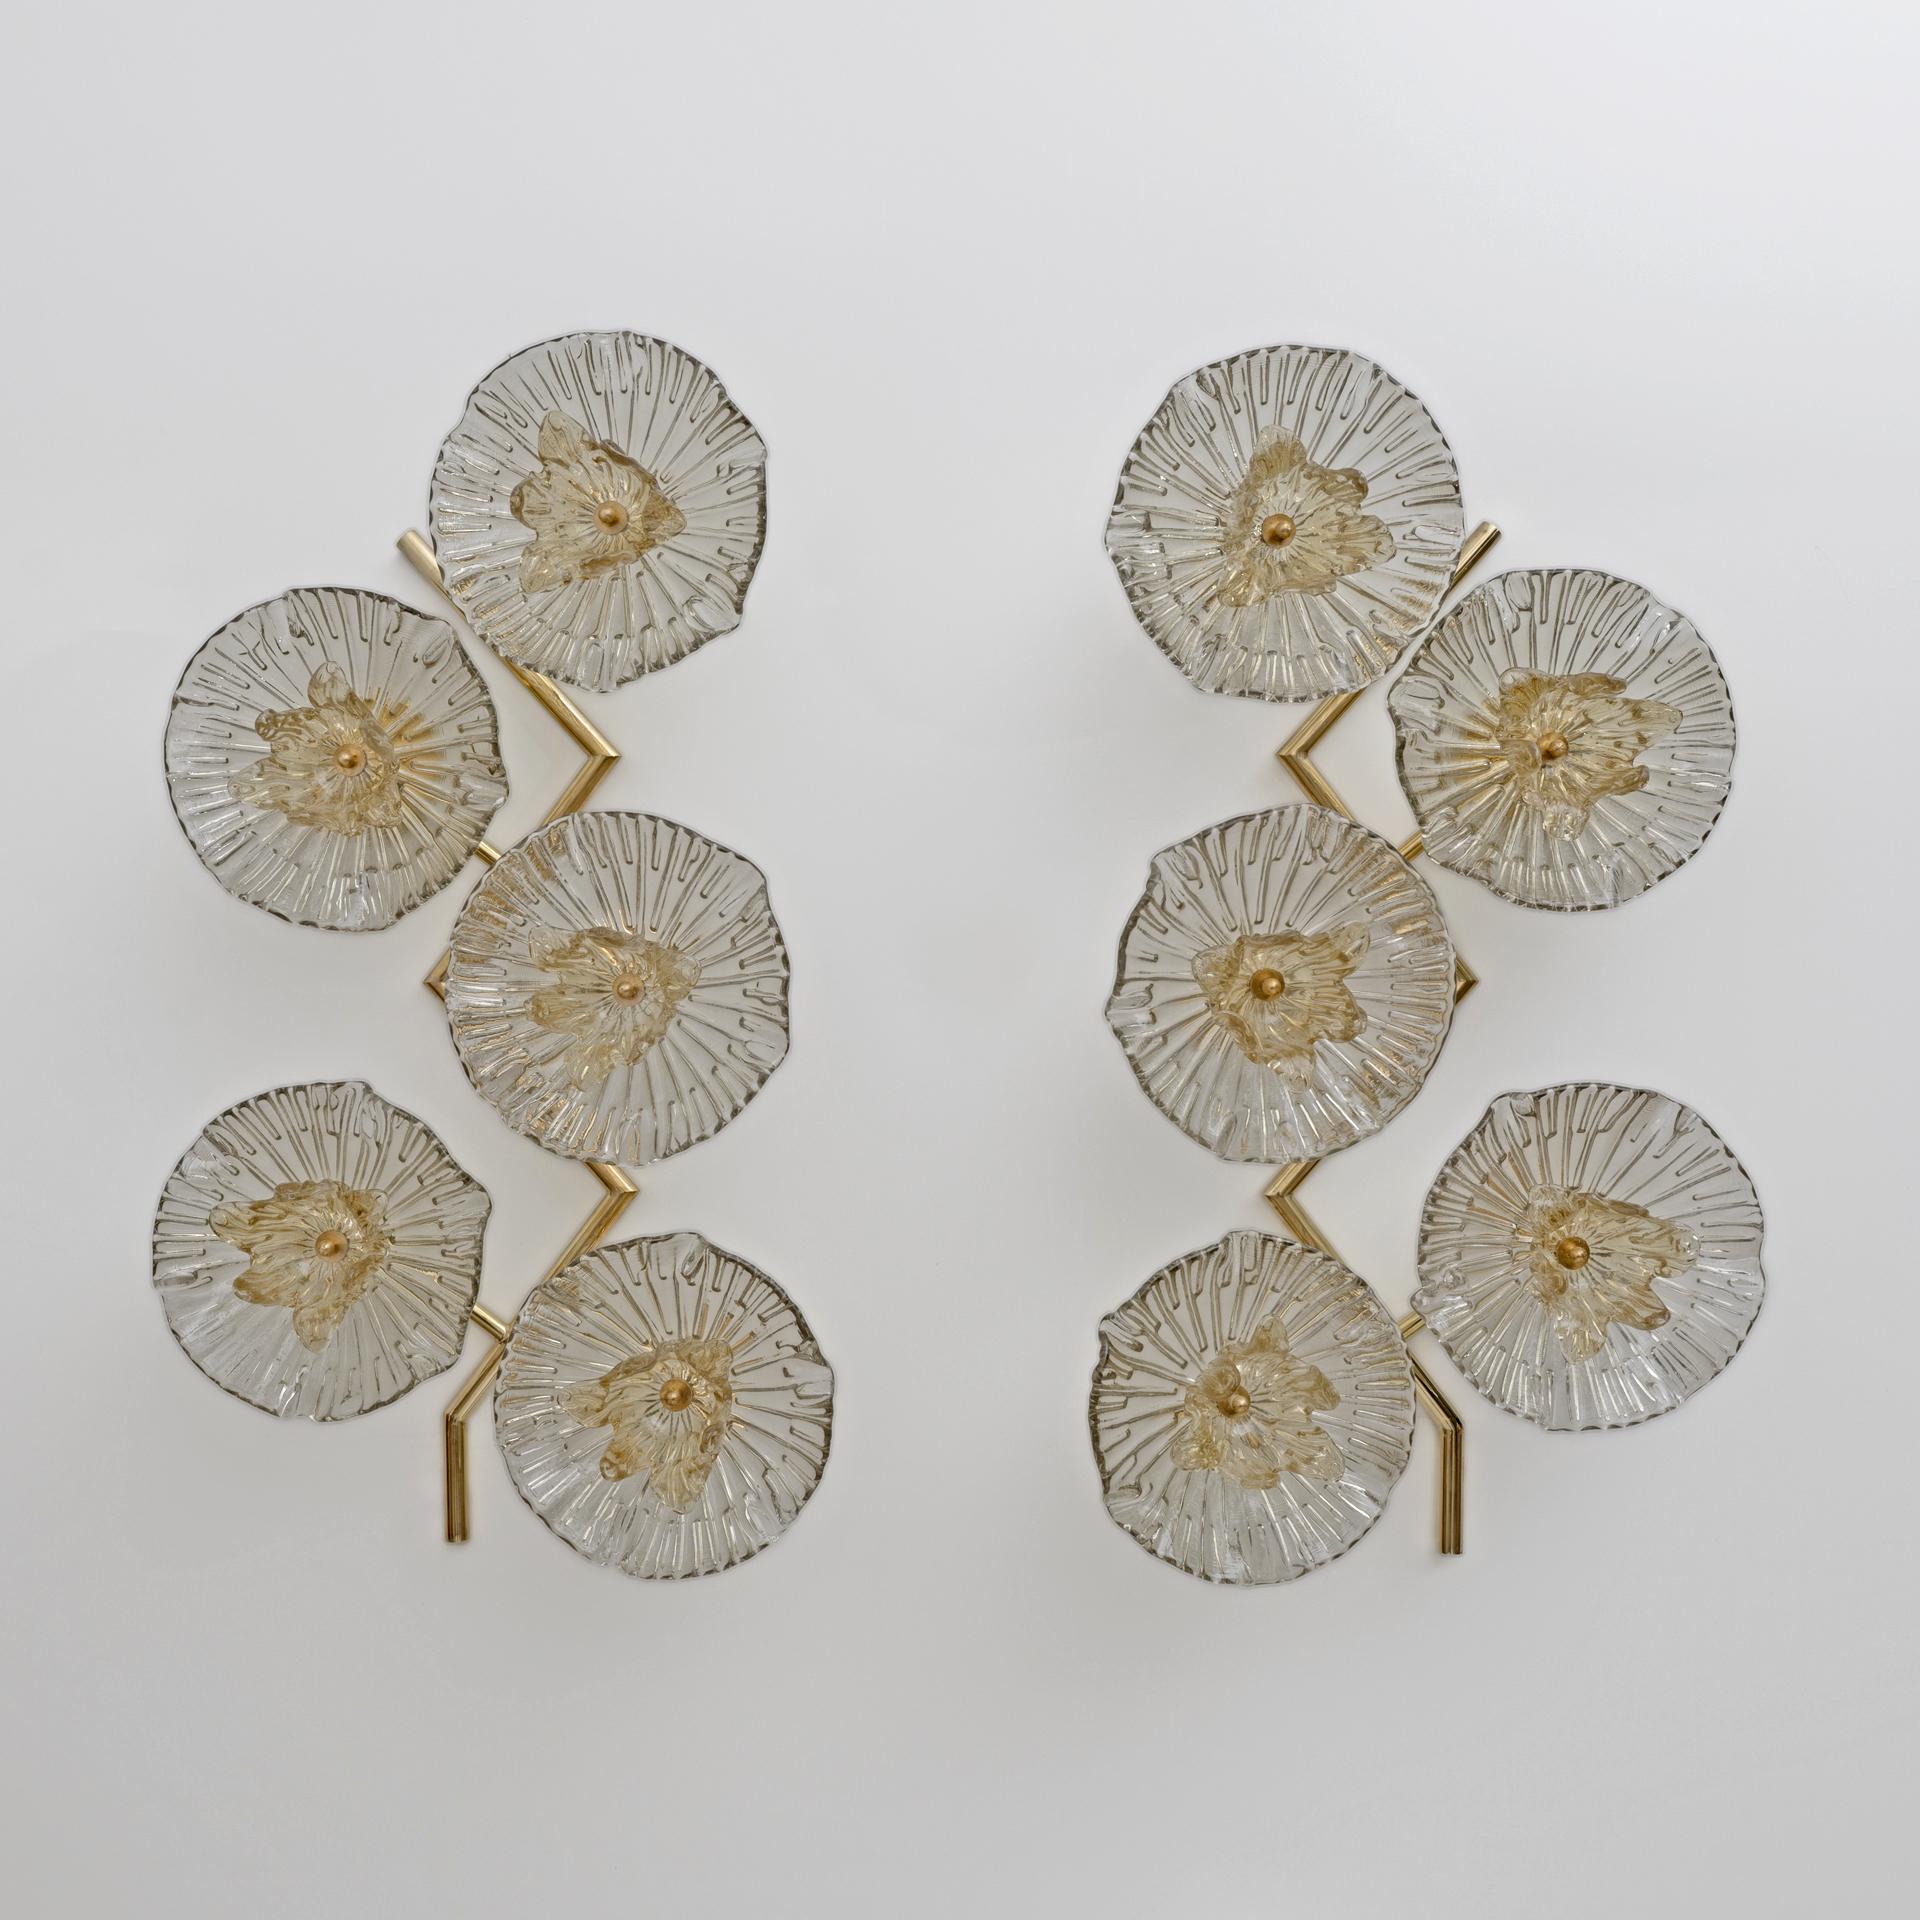 Ein Paar Wandlampen, vollständig handgefertigt in Murano, Italien, die die Natur und die Energie des Feng Shui in Ihre Innenräume bringen. Dieses Paar moderner und organischer Wandleuchten besteht aus einer handgefertigten Messinghalterung in Form